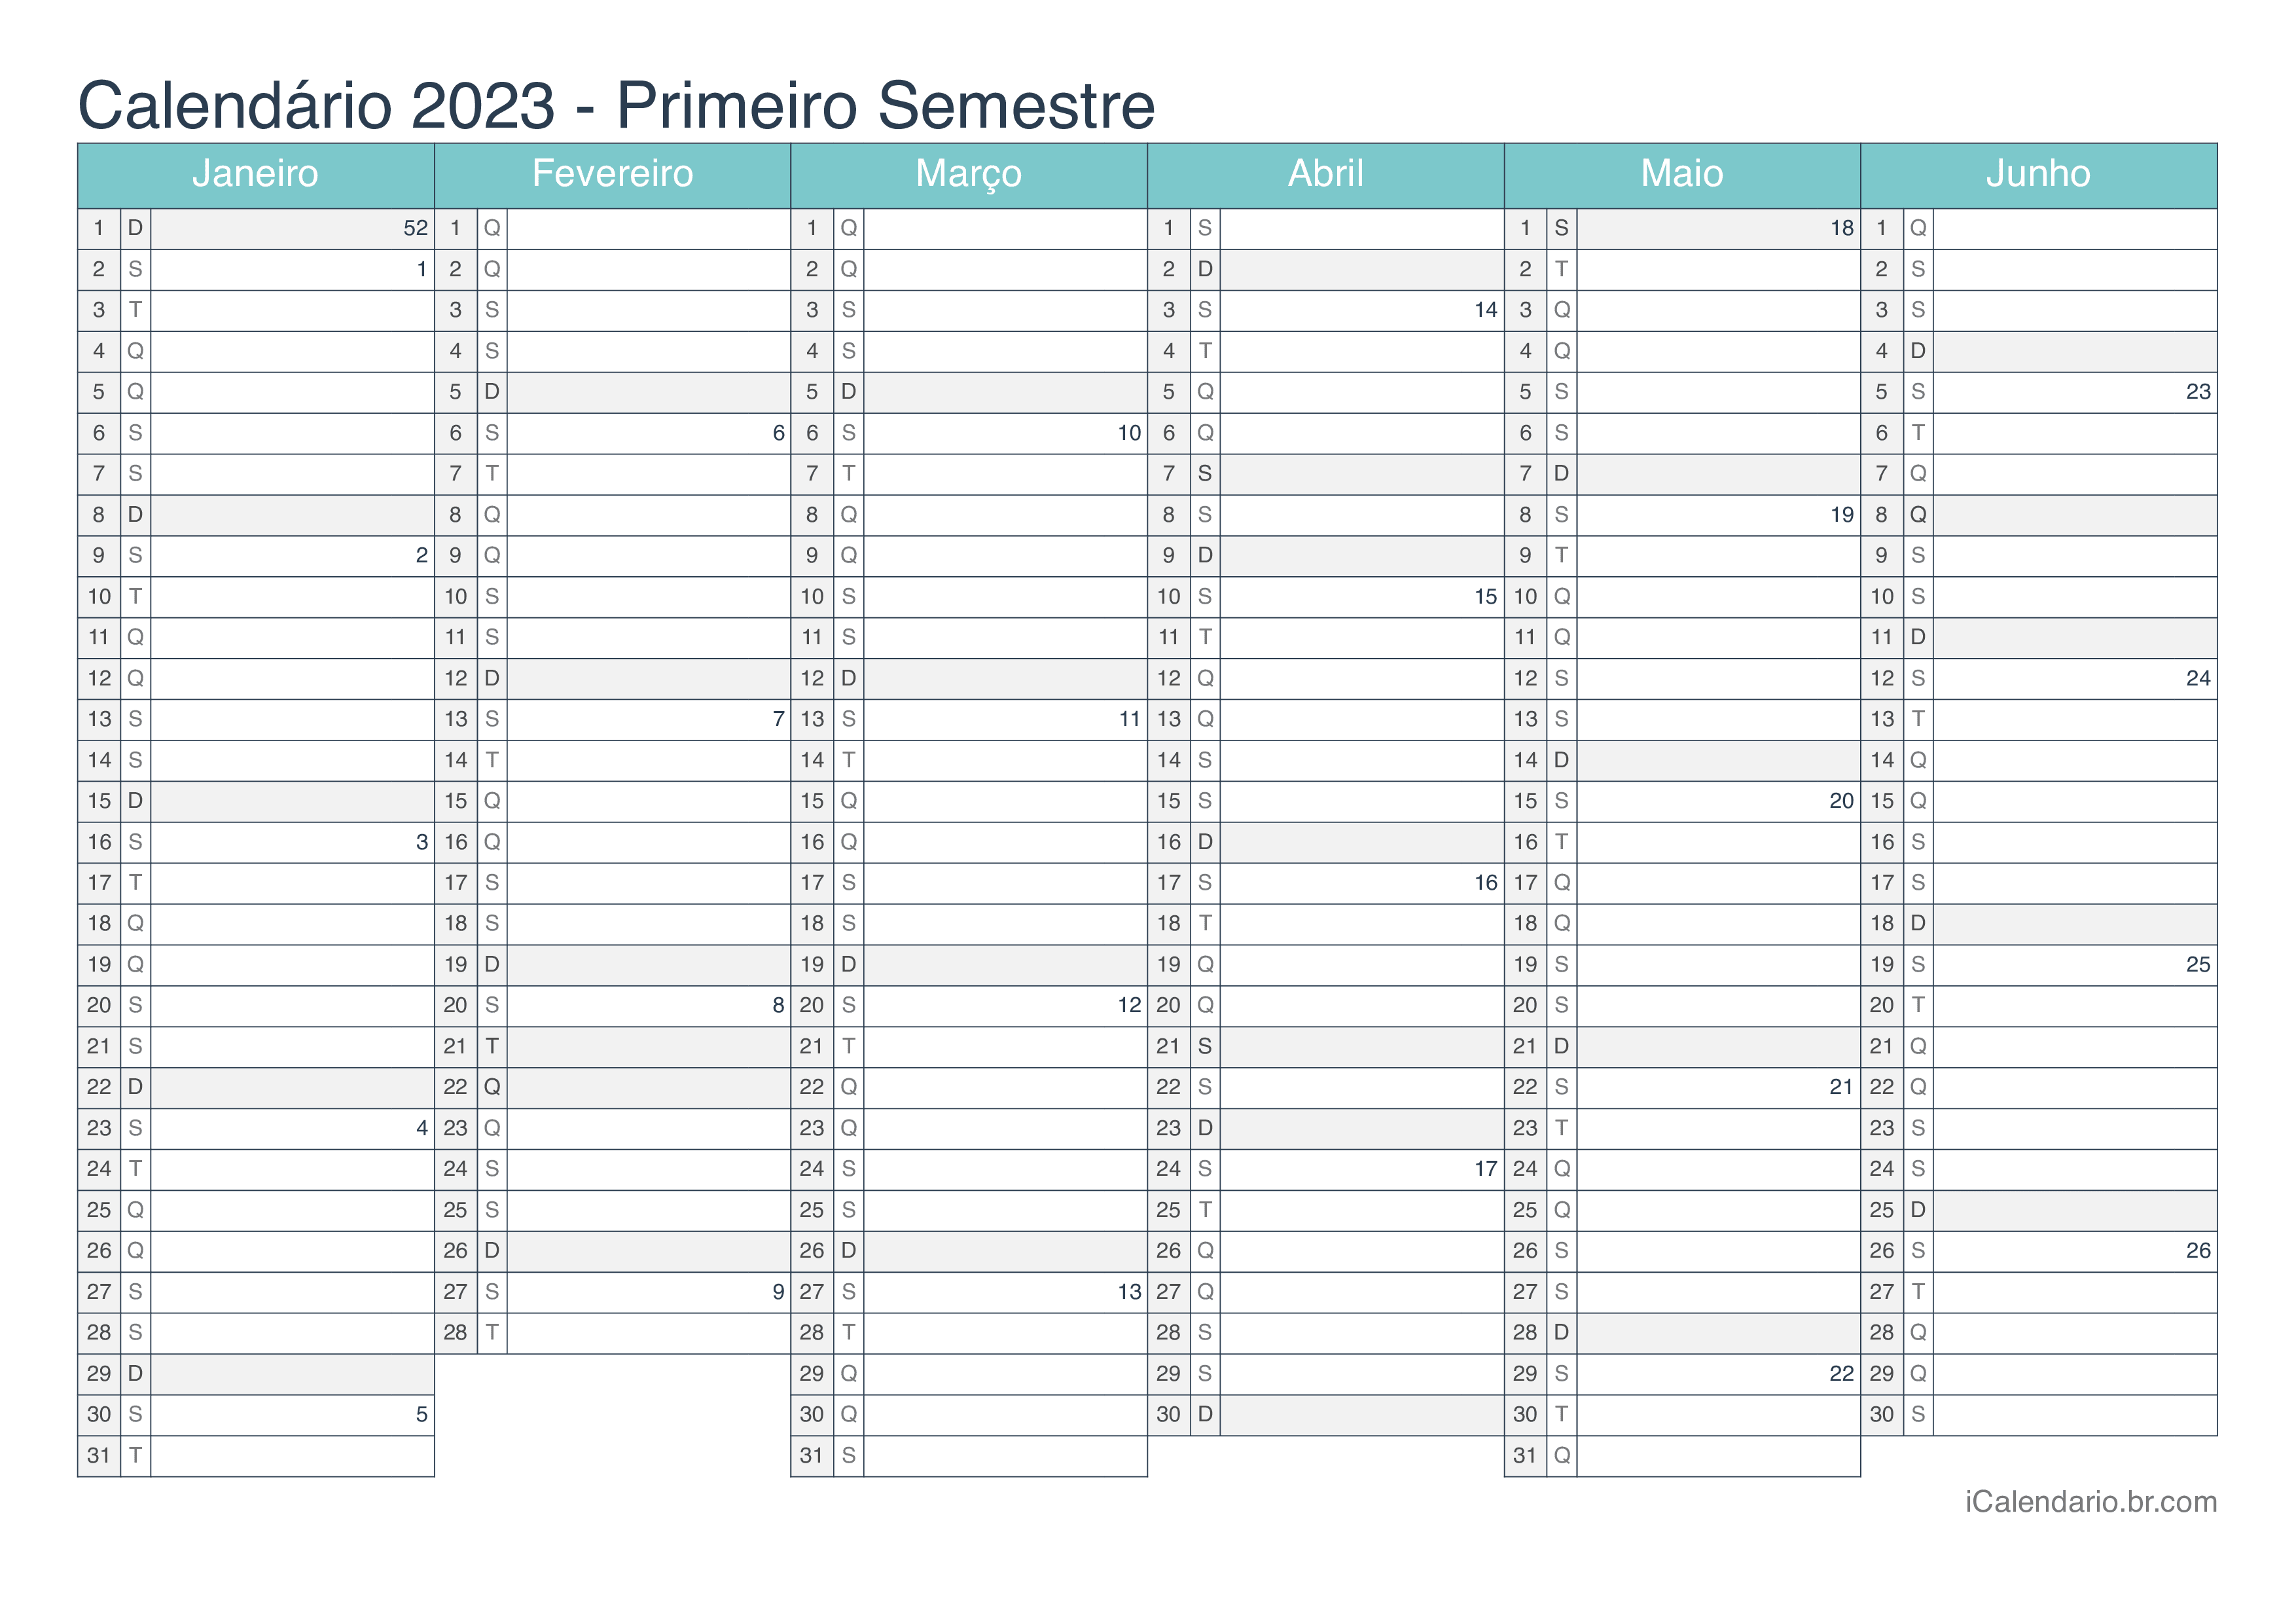 Calendário por semestre com números da semana 2023 - Turquesa